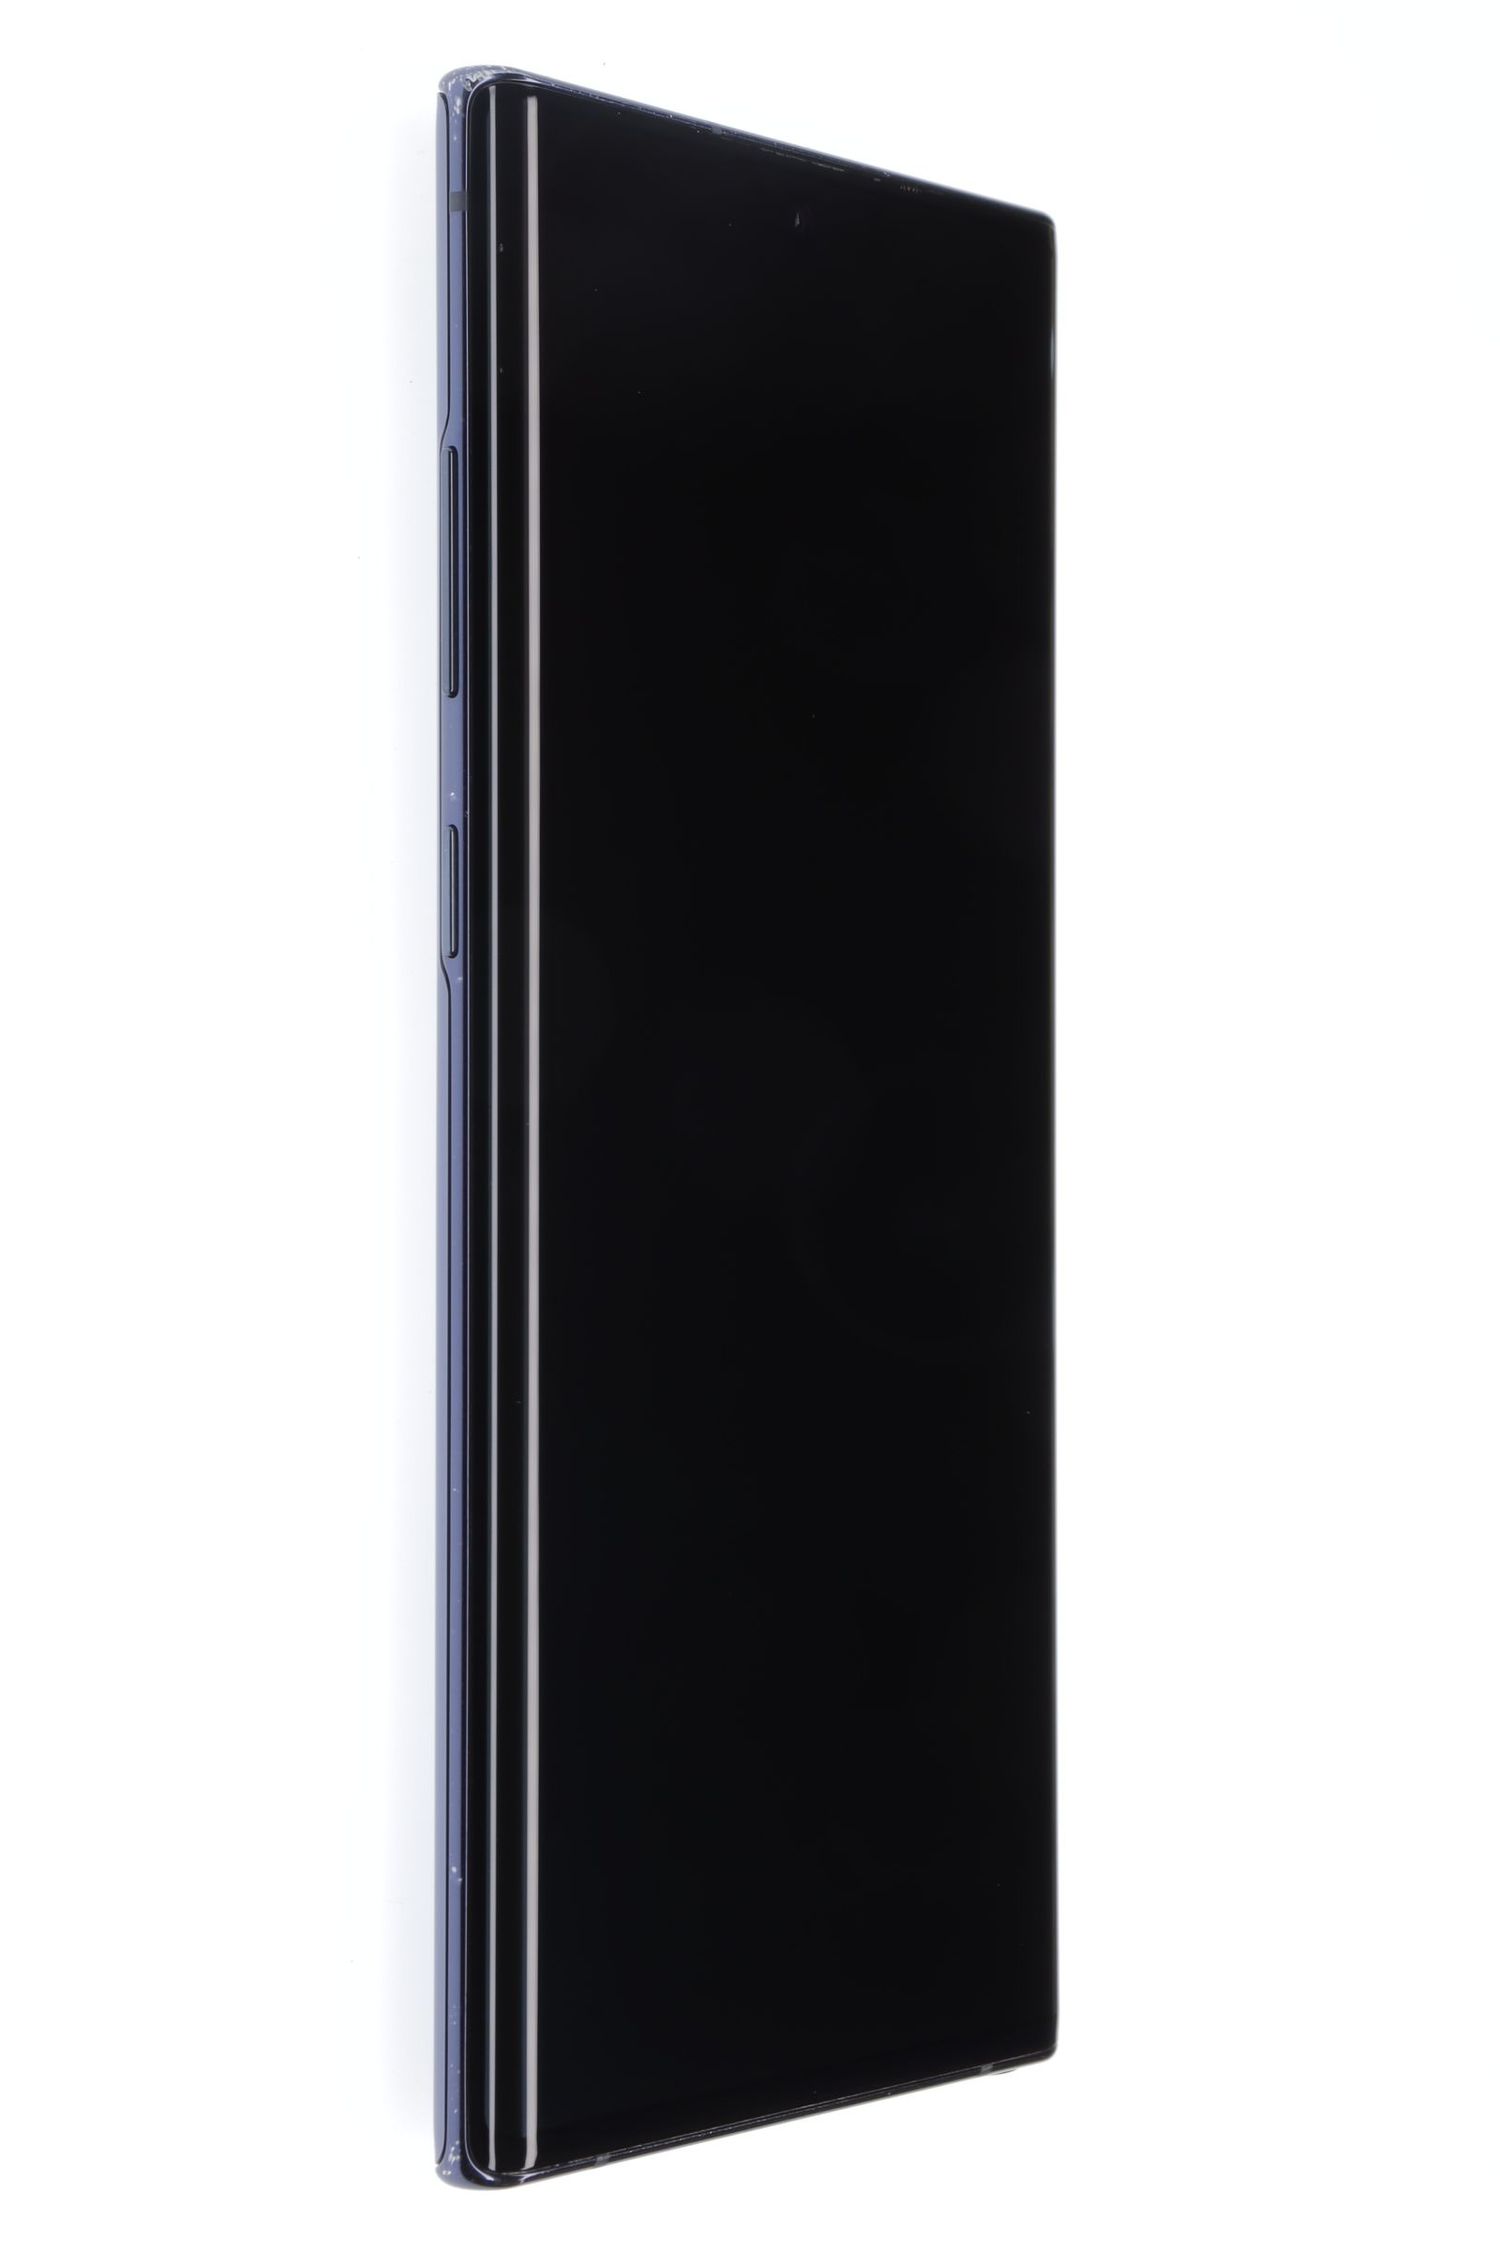 Κινητό τηλέφωνο Samsung Galaxy Note 10 Plus, Aura Black, 256 GB, Foarte Bun